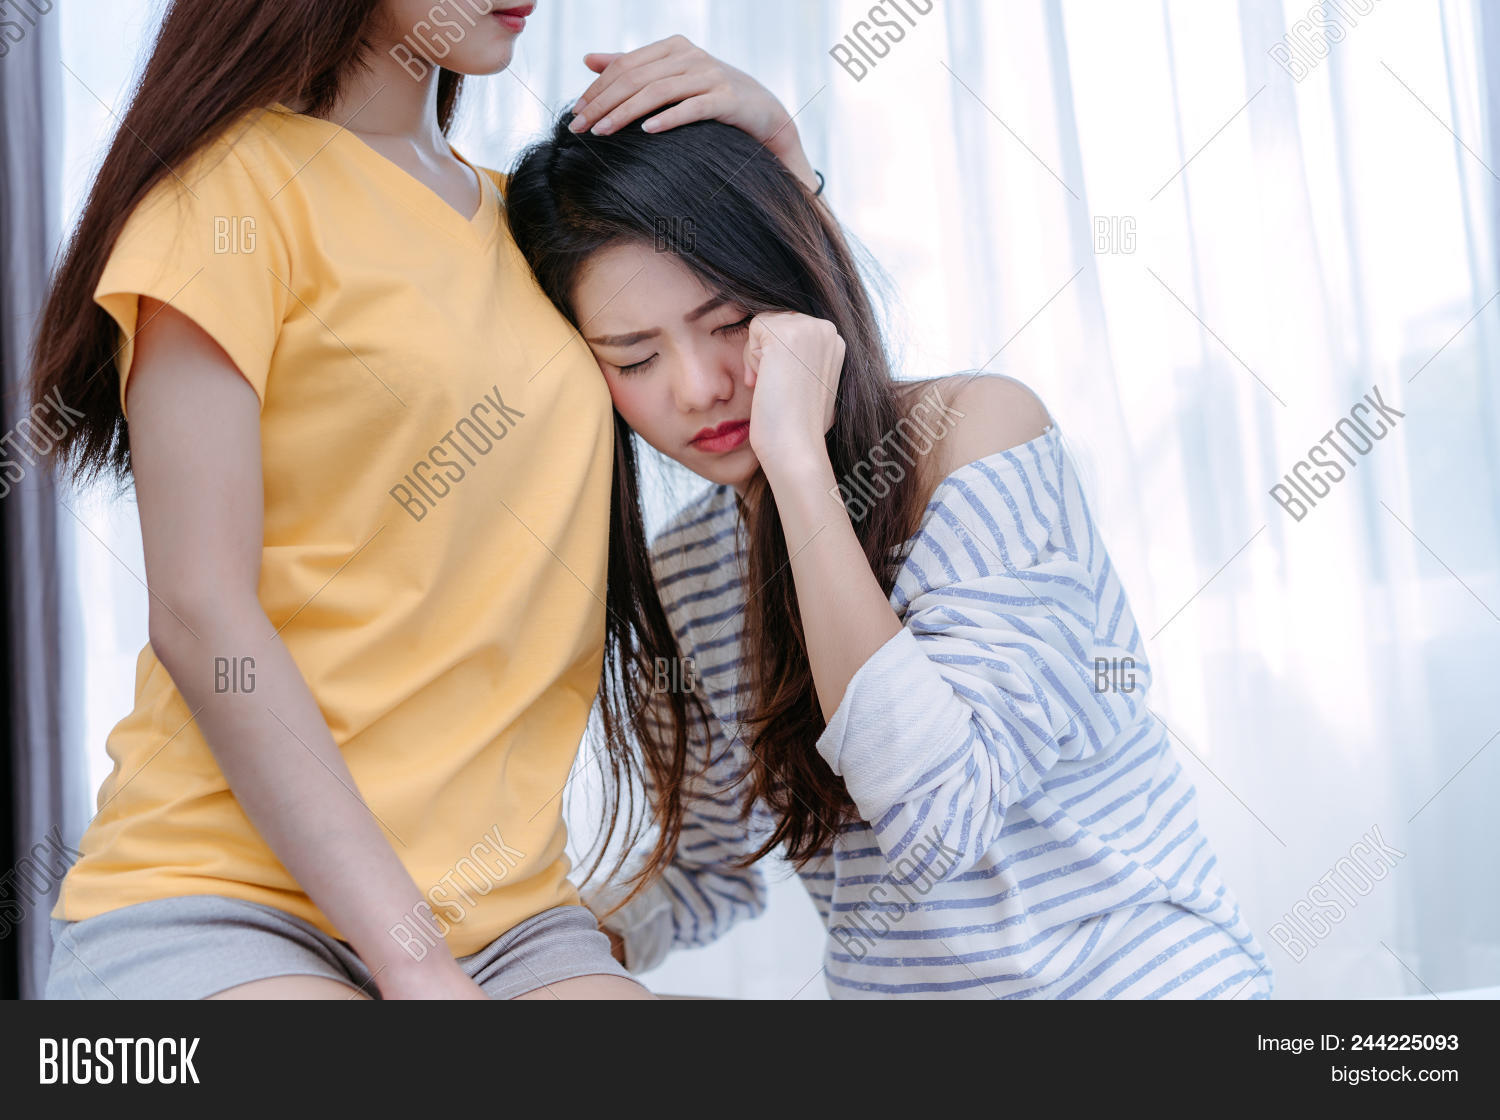 asian girls lesbian sex